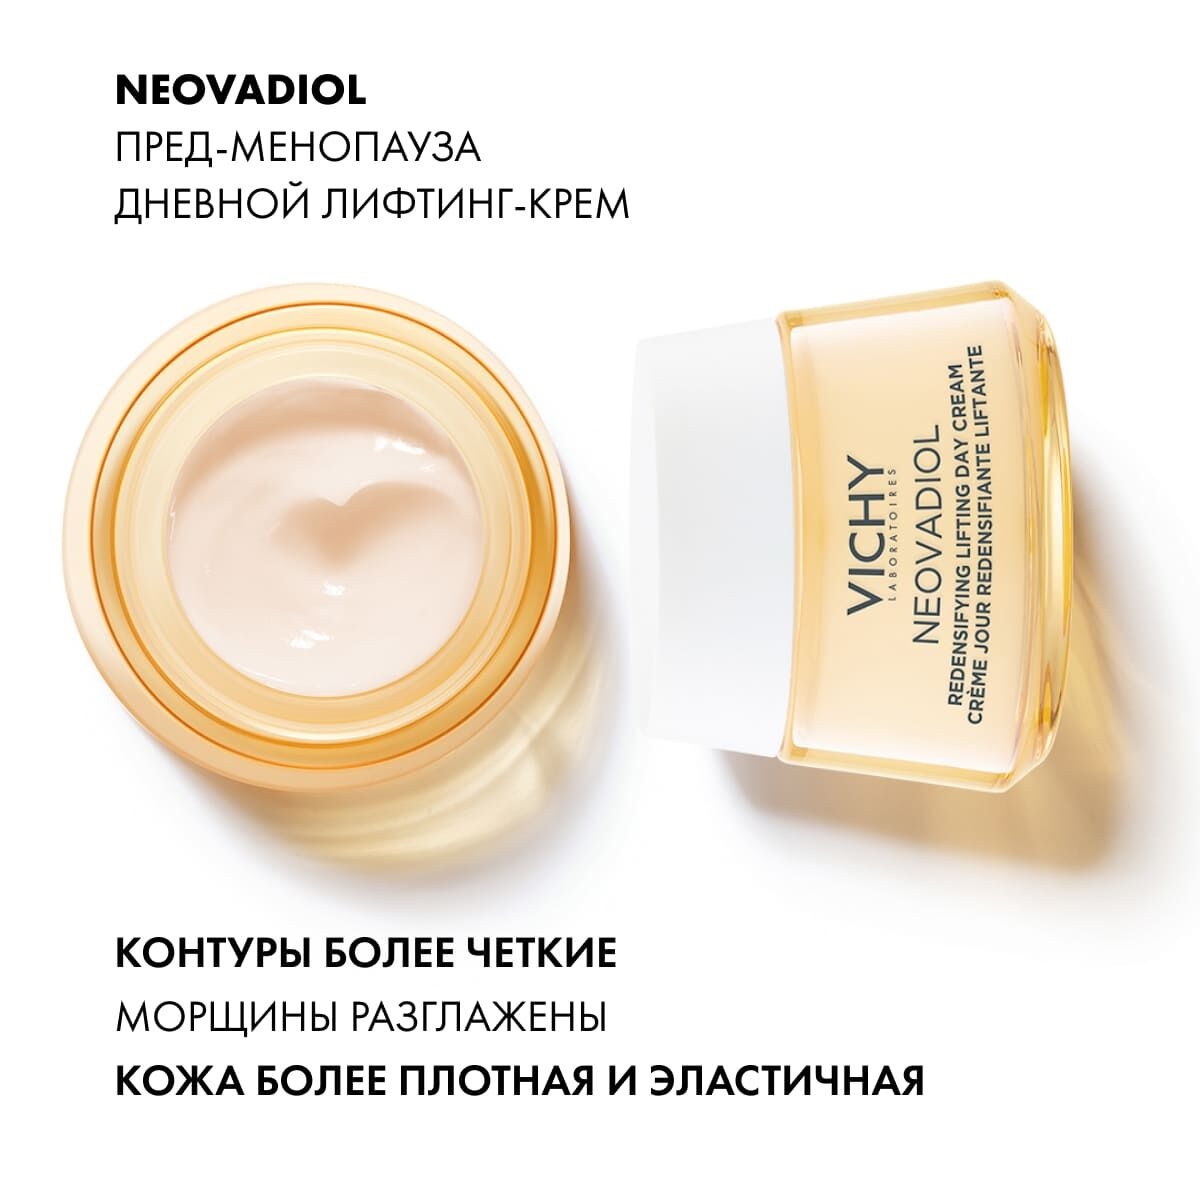 Уплотняющий дневной лифтинг-крем для нормальной и комбинированной кожи Пред-менопауза Neovadiol